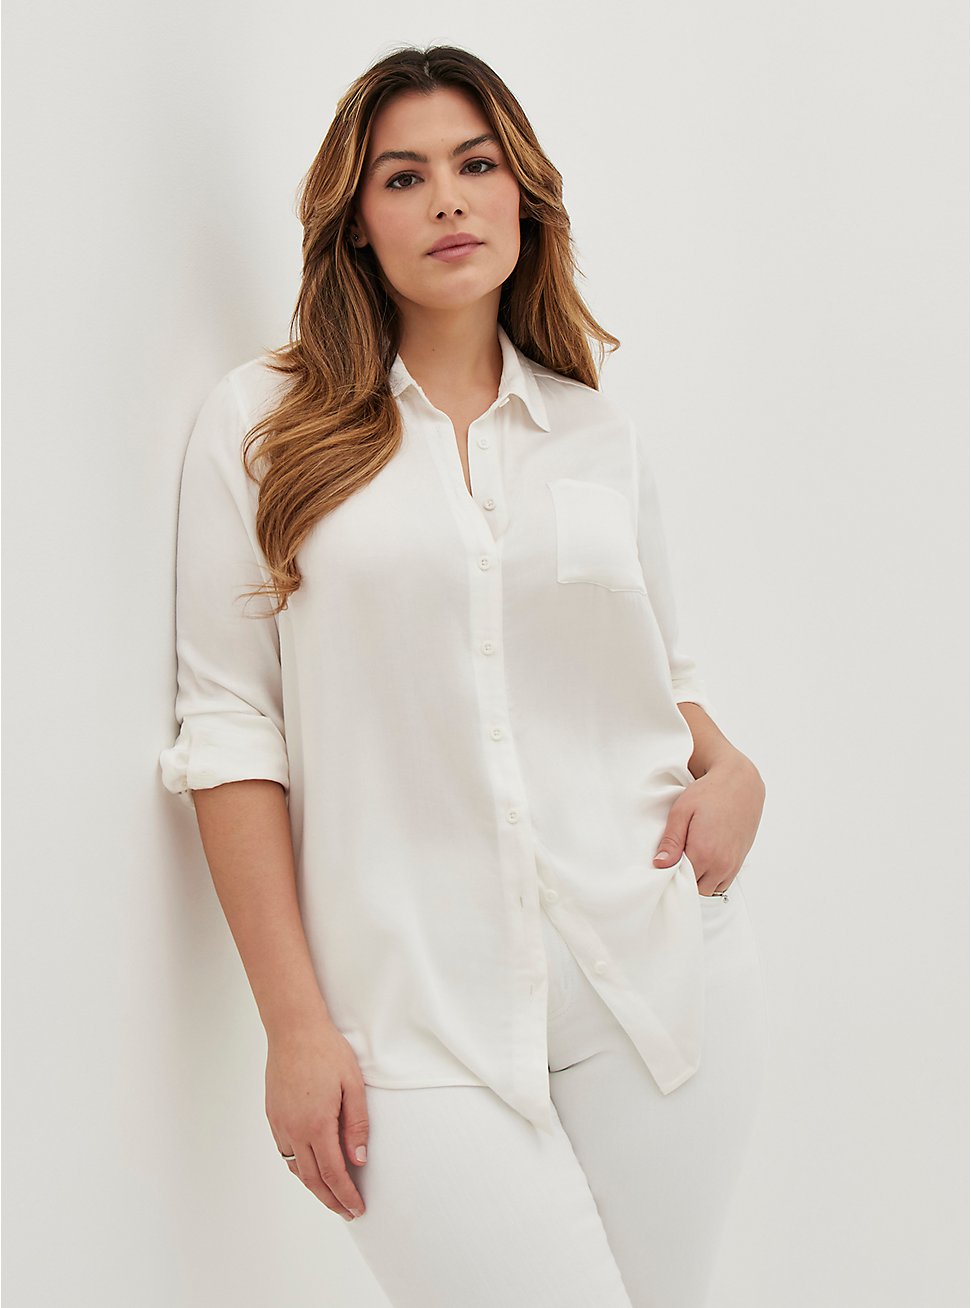 Lizzie Button-Up Shirt - Gauze White, CLOUD DANCER, hi-res